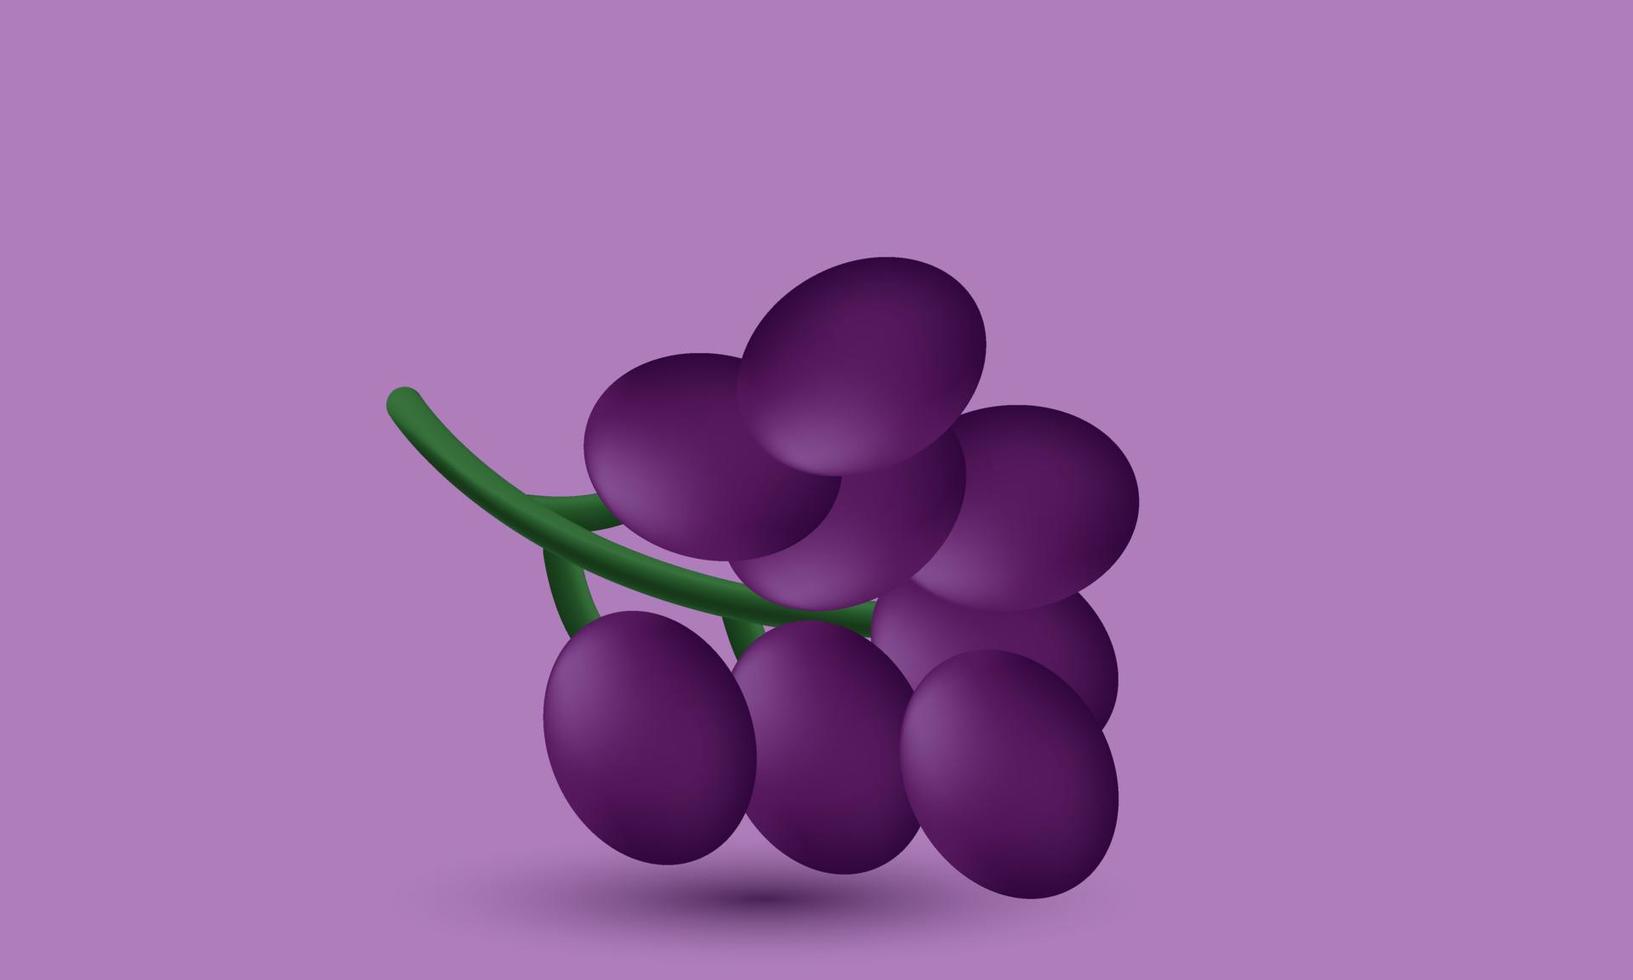 style de dessin animé de raisin 3d réaliste unique flottant minimal isolé sur vecteur